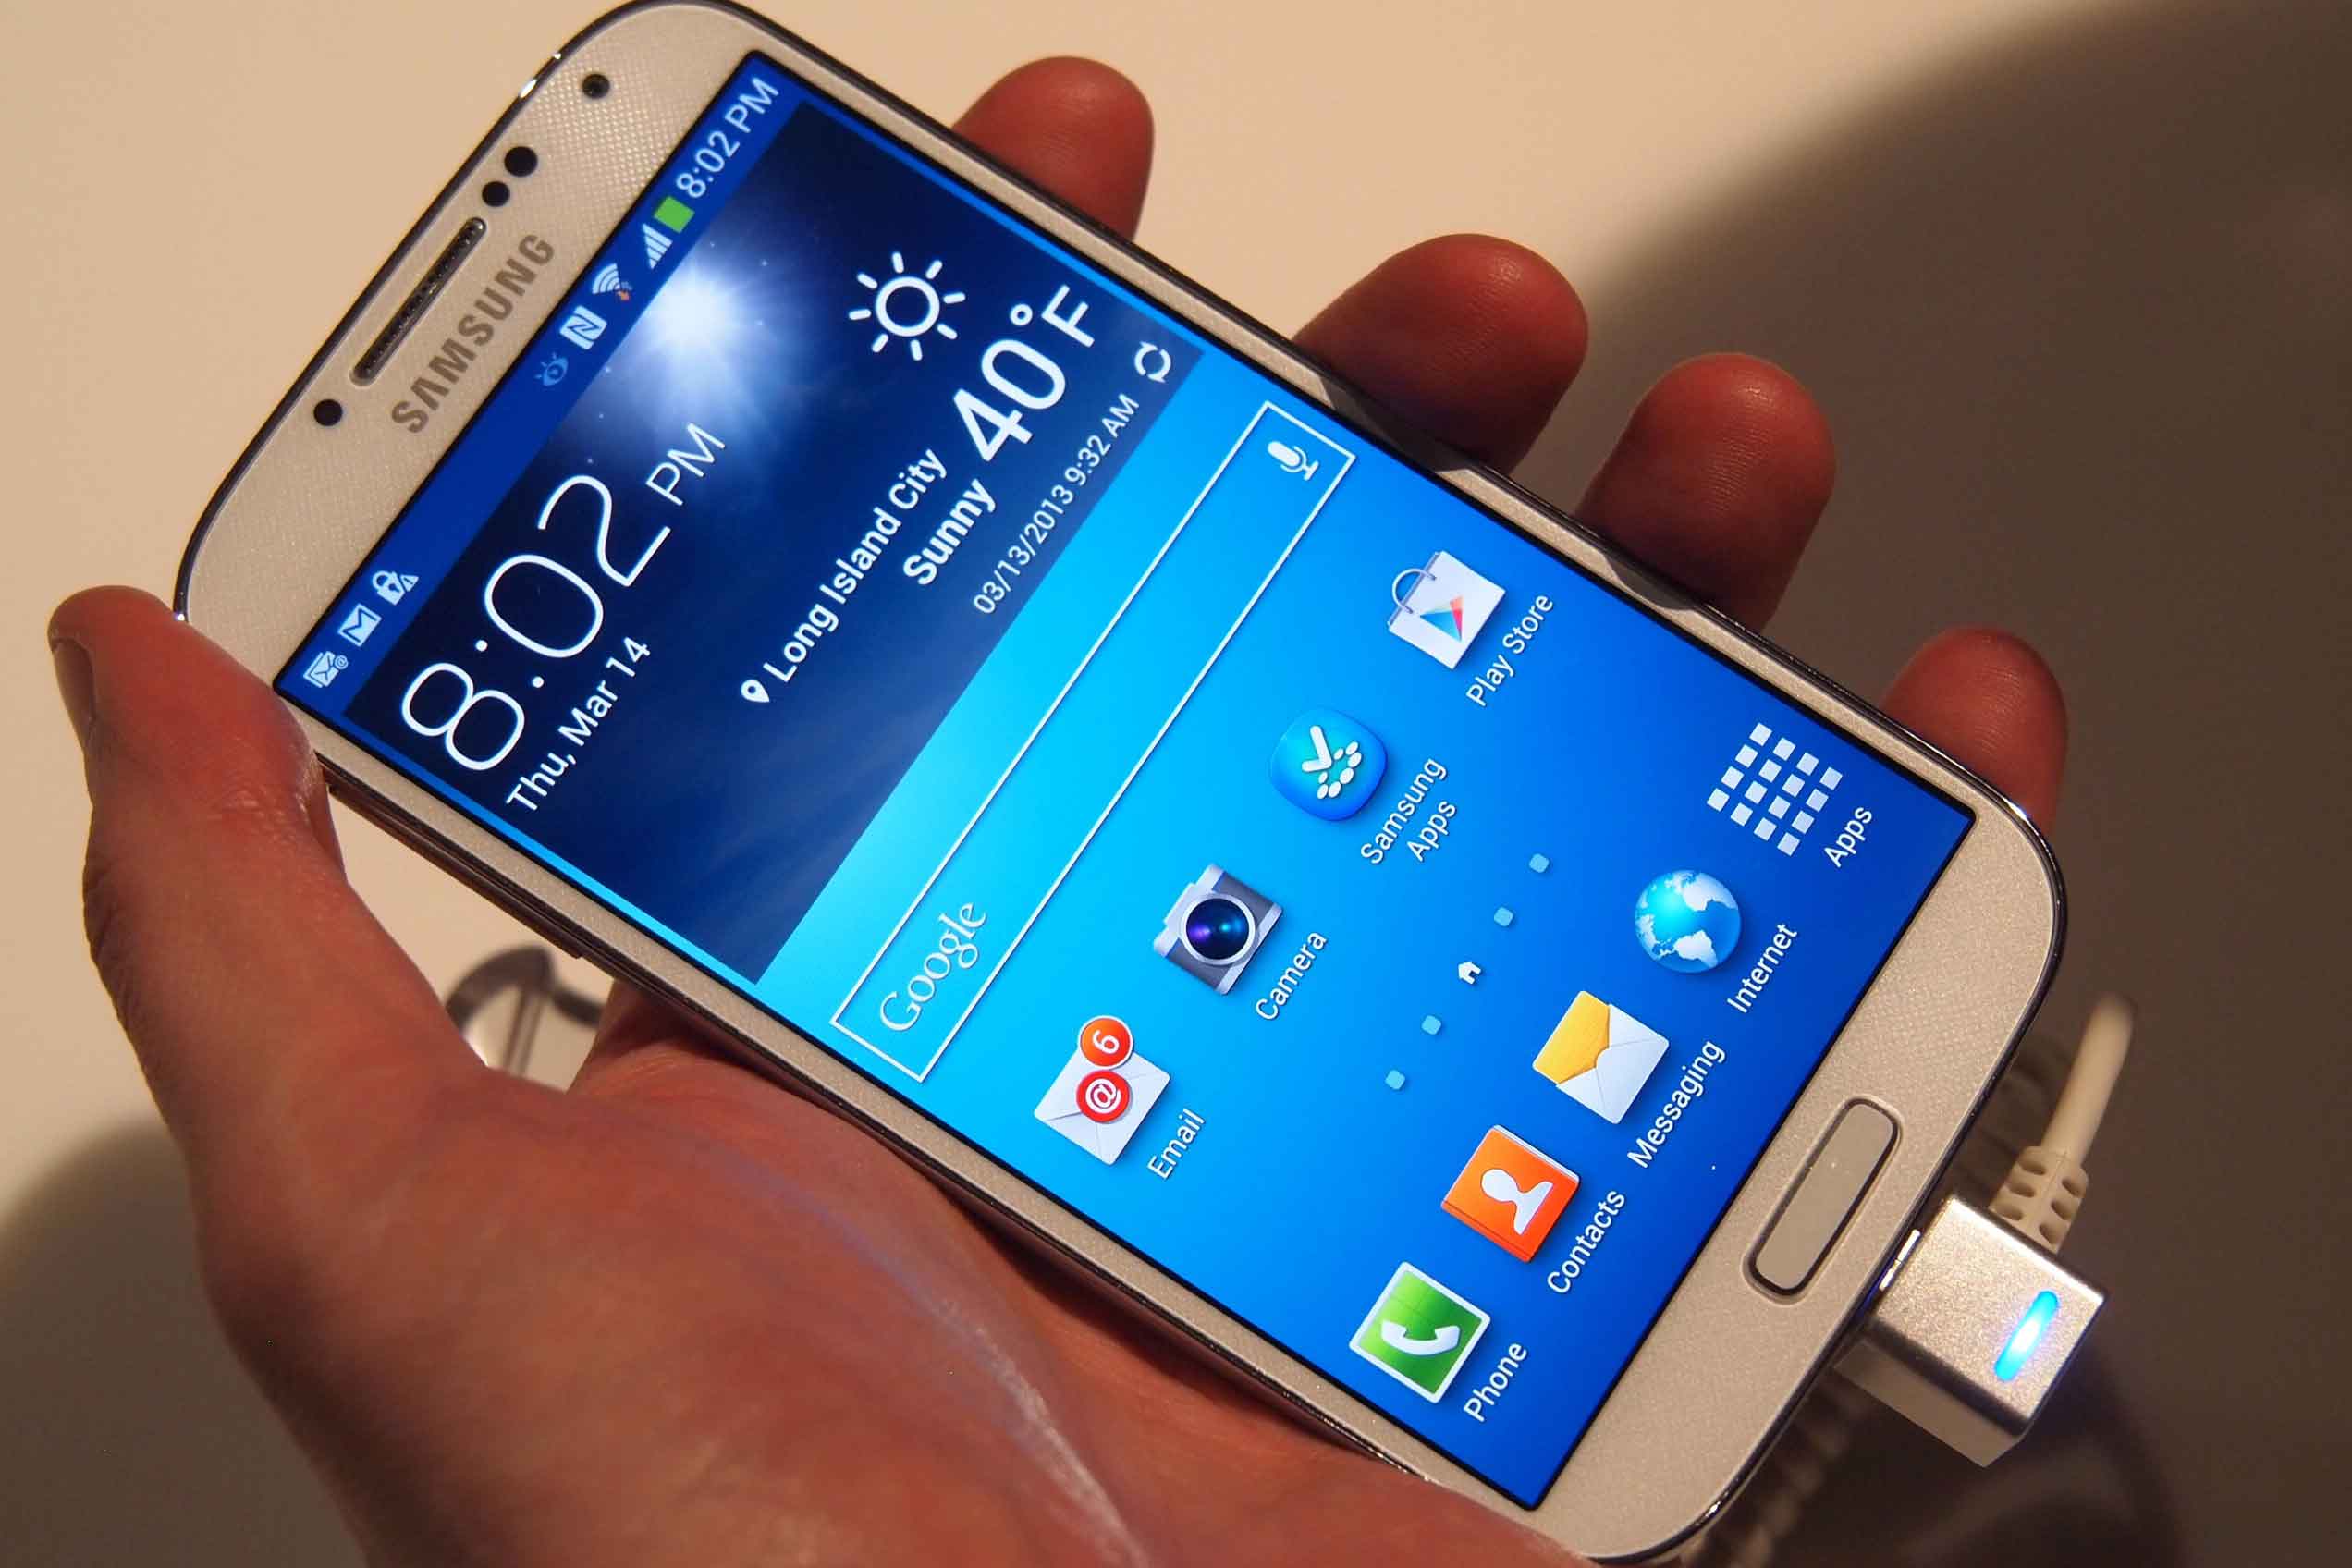 Tổng hợp 18 lỗi phổ biến trên Samsung Galaxy S5 và cách sửa lỗi